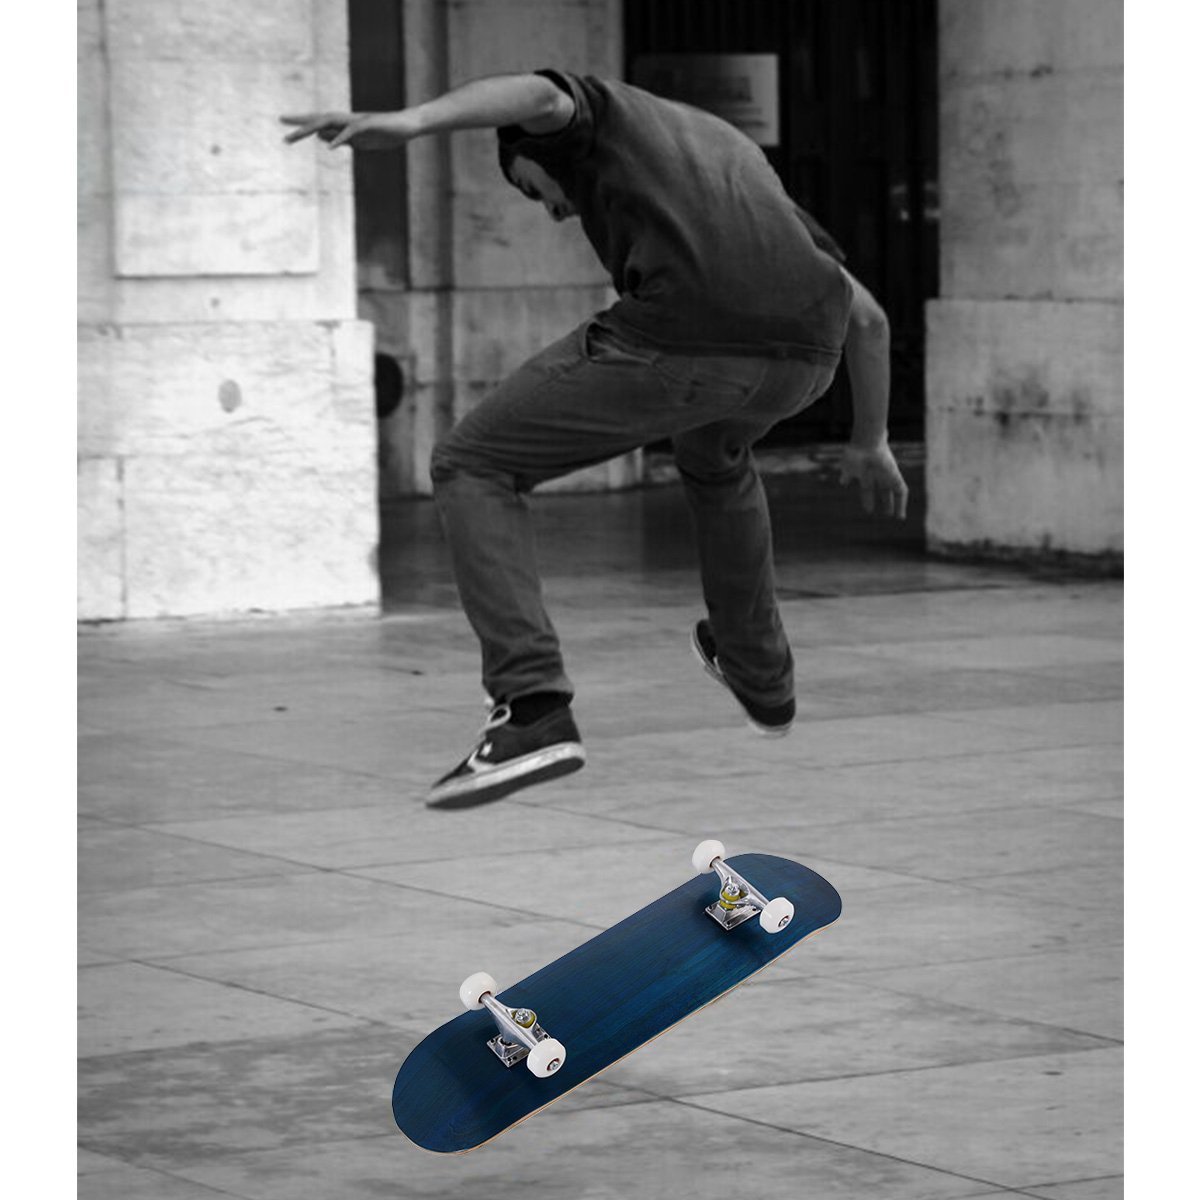 Skateboard Komplettboard Funboard Minicruiser Holzboard Longboard 20x79cm-blau